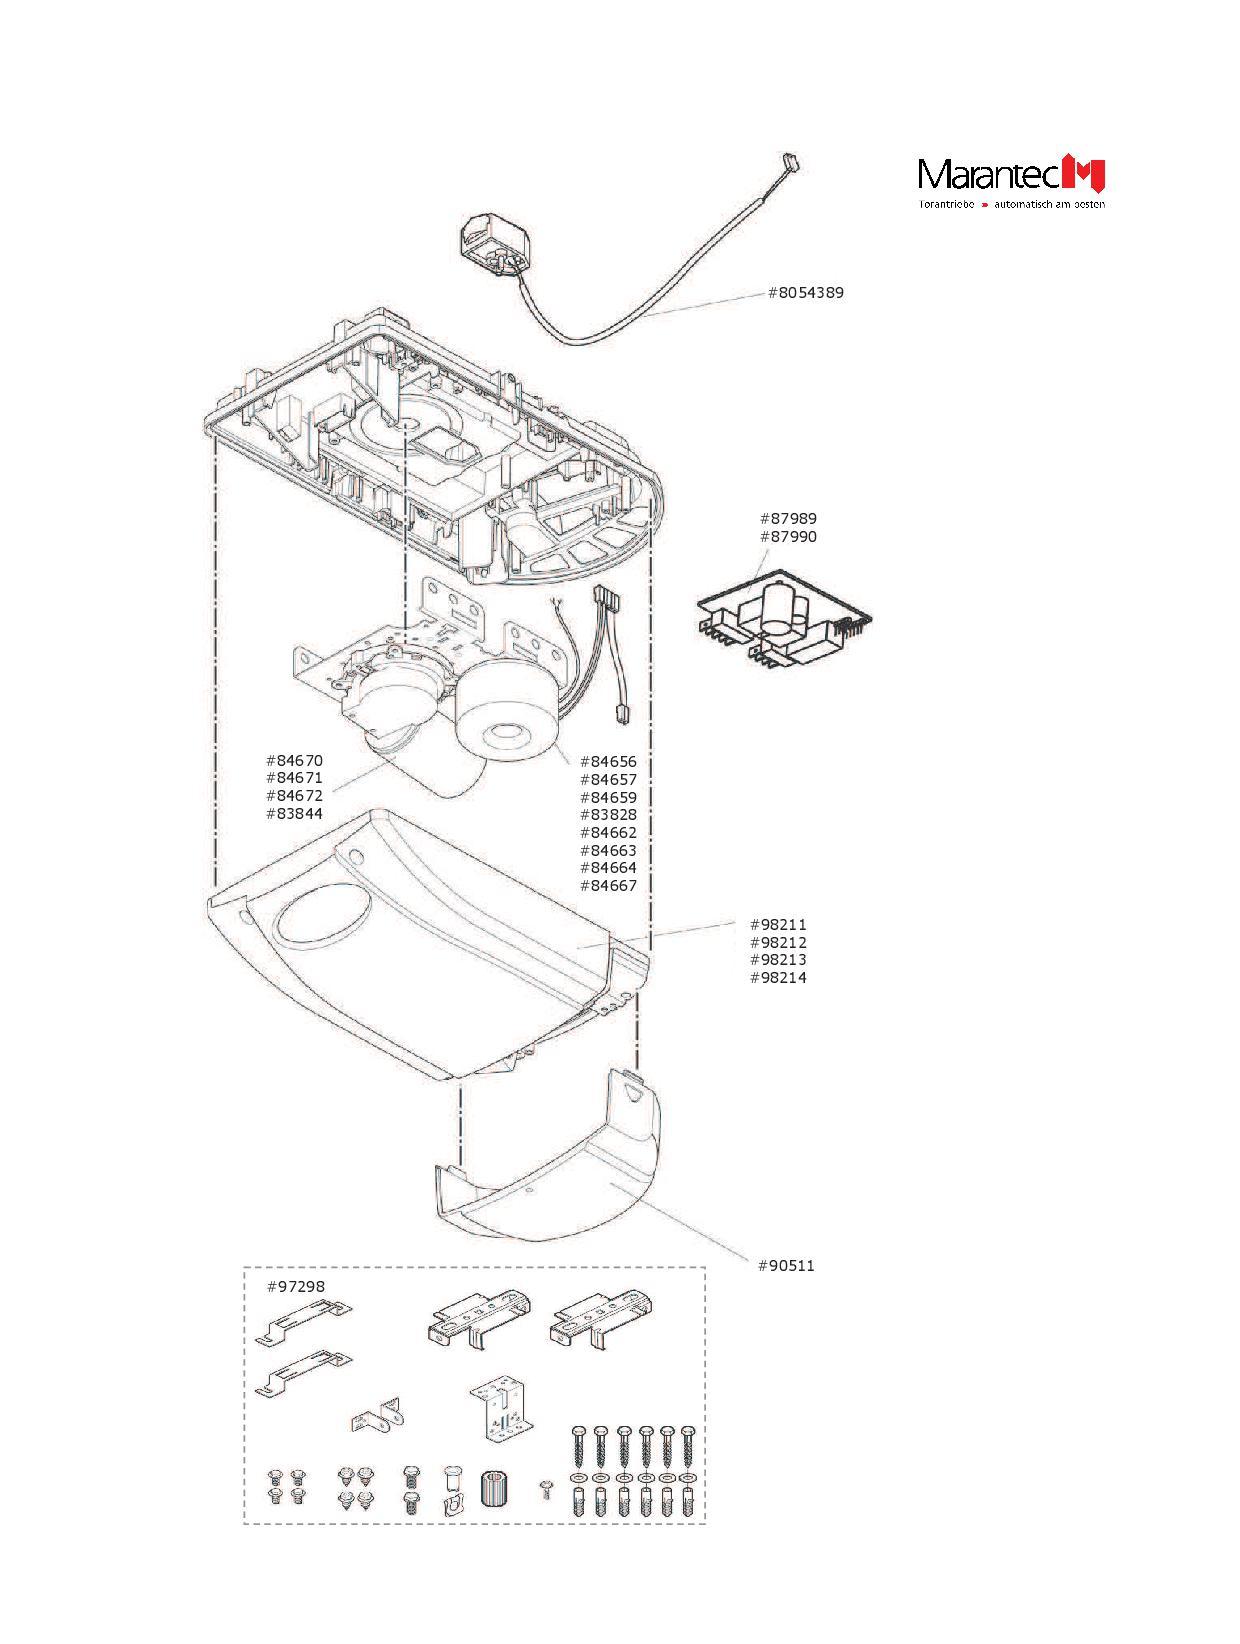 Marantec Antriebshaube, Artikel Nr. 98214 für den Garagentorantrieb ​Comfort 250.2 speed, mit Beleuchtungsblende